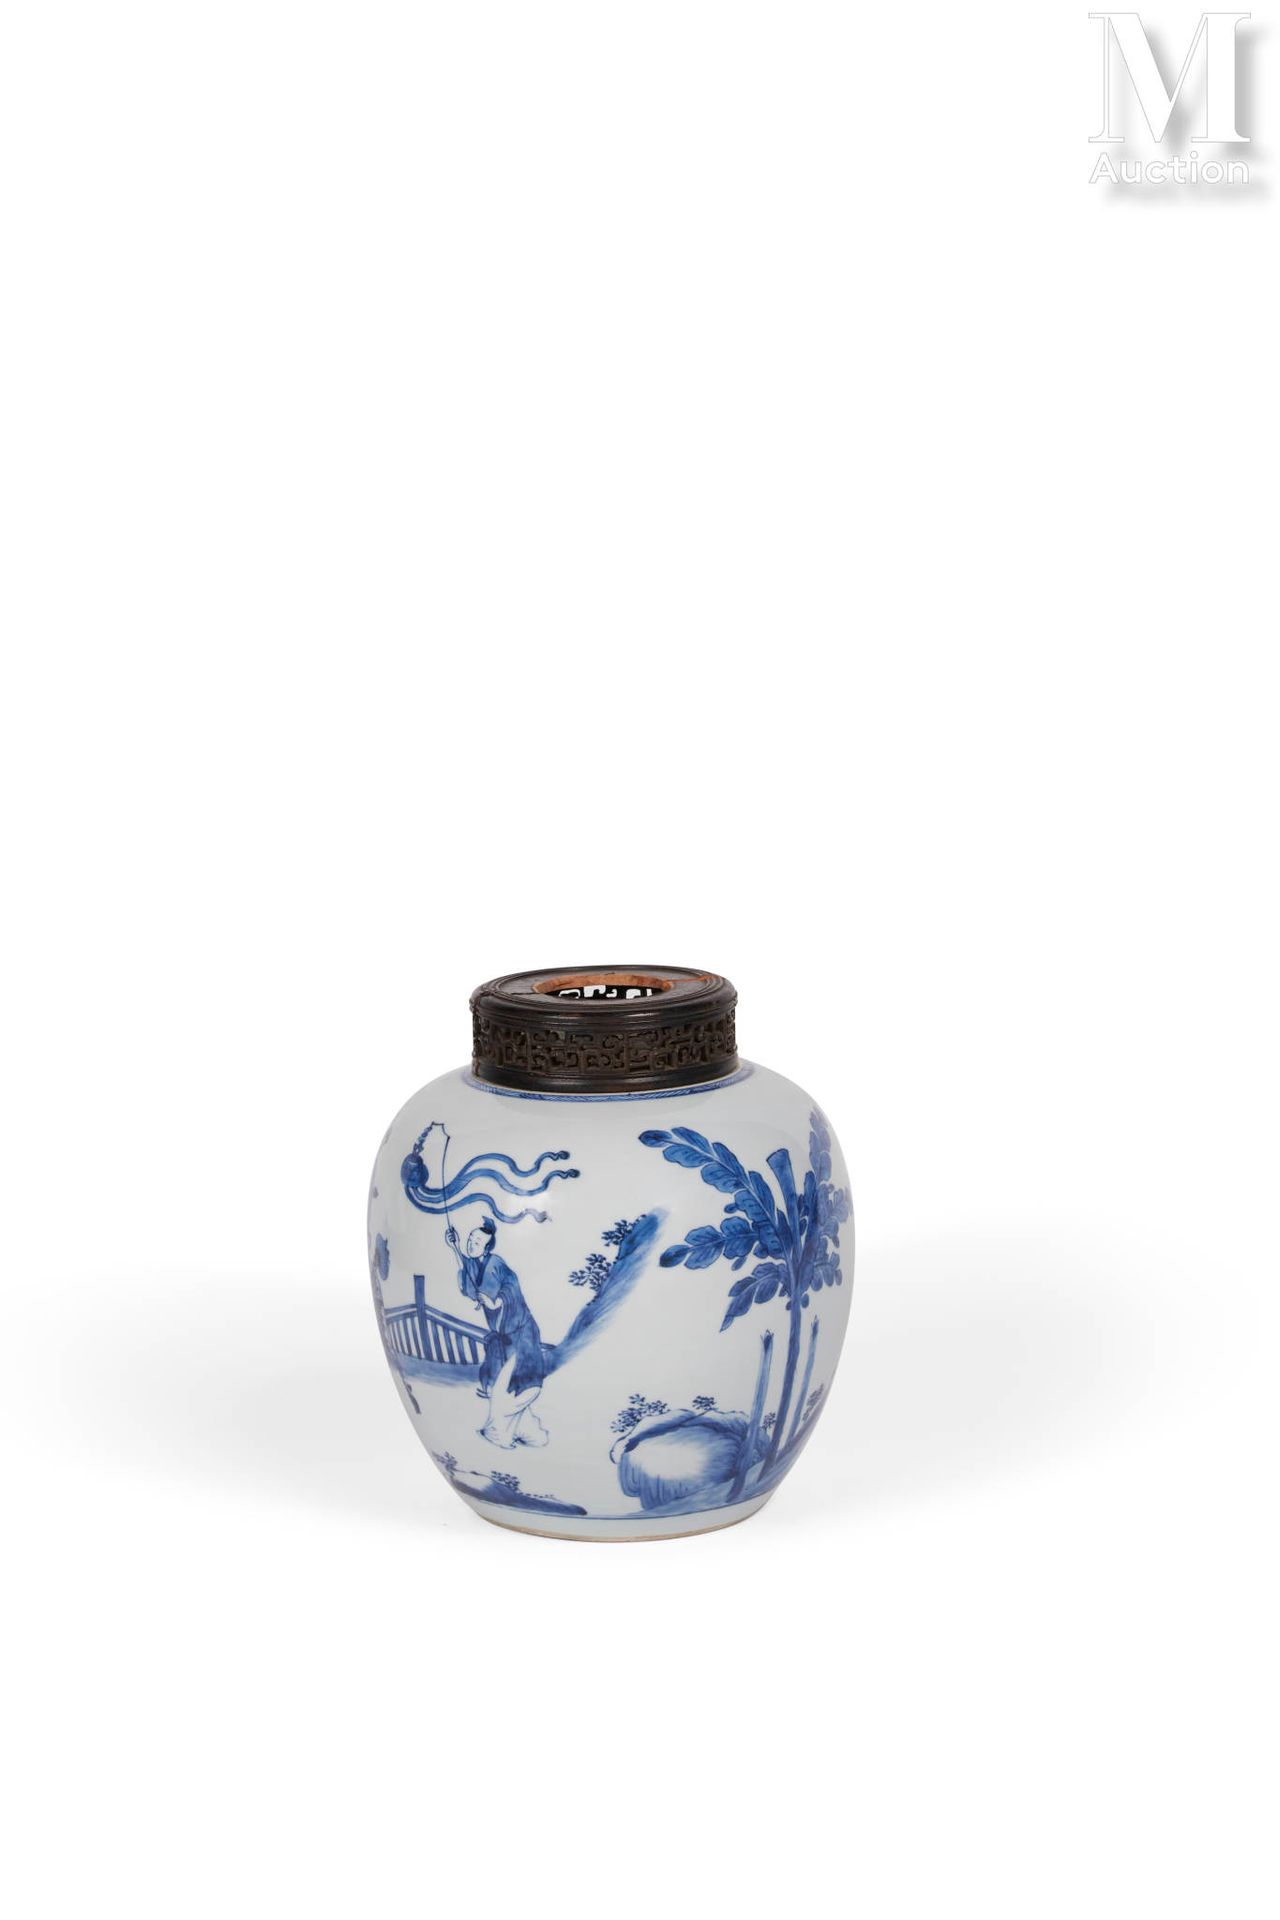 *CHINE, Epoque Kangxi, XVIIIe siècle 瓷器花瓶

卵圆形，白底钴蓝装饰的麒麟座上的优雅女子，旁边有三个随从在户外露台上。附有&hellip;